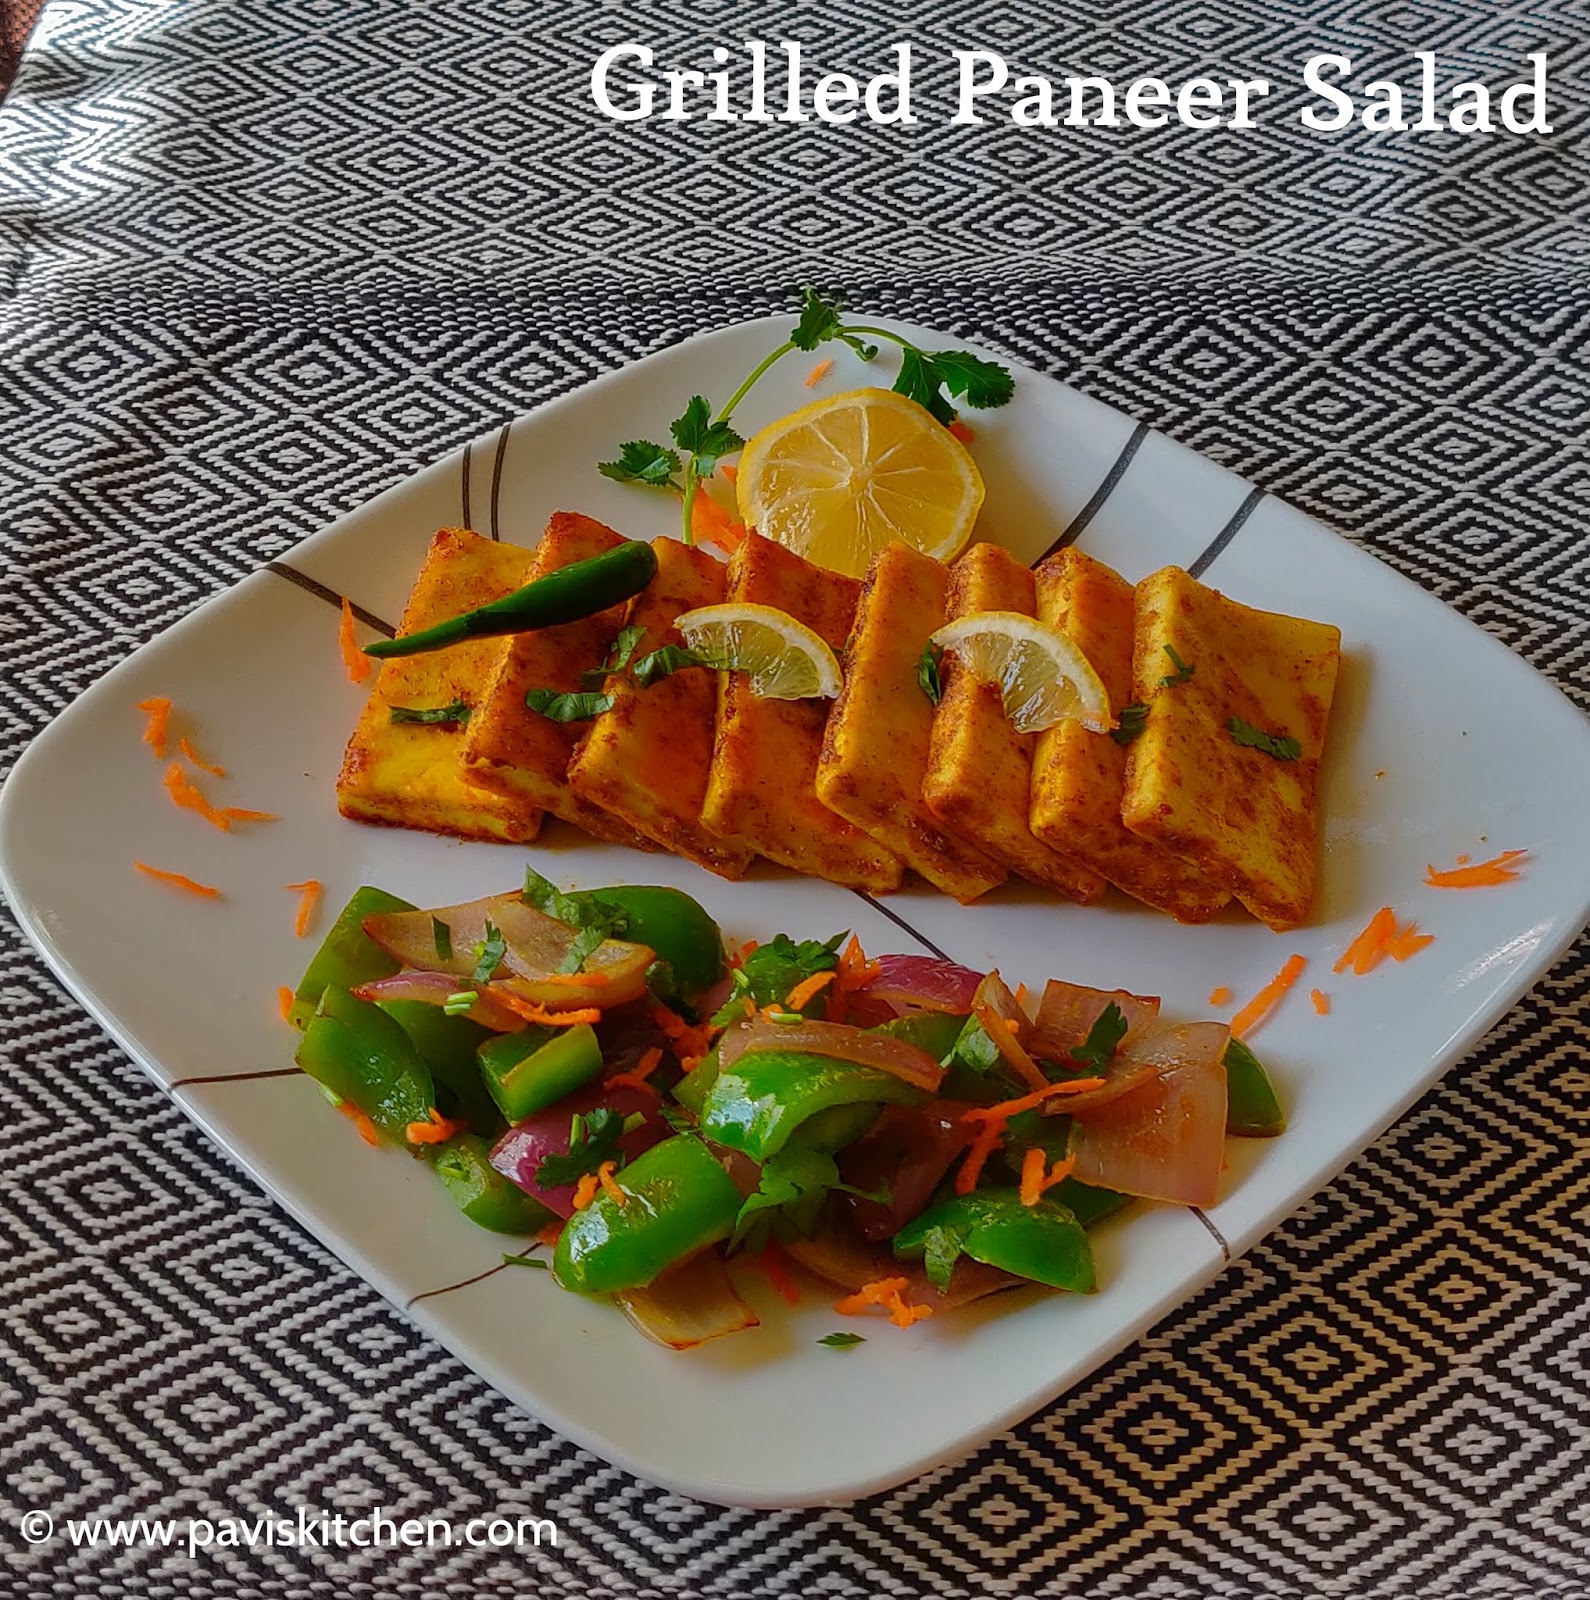 Grilled Paneer Recipe | Homemade Grilled Paneer Salad